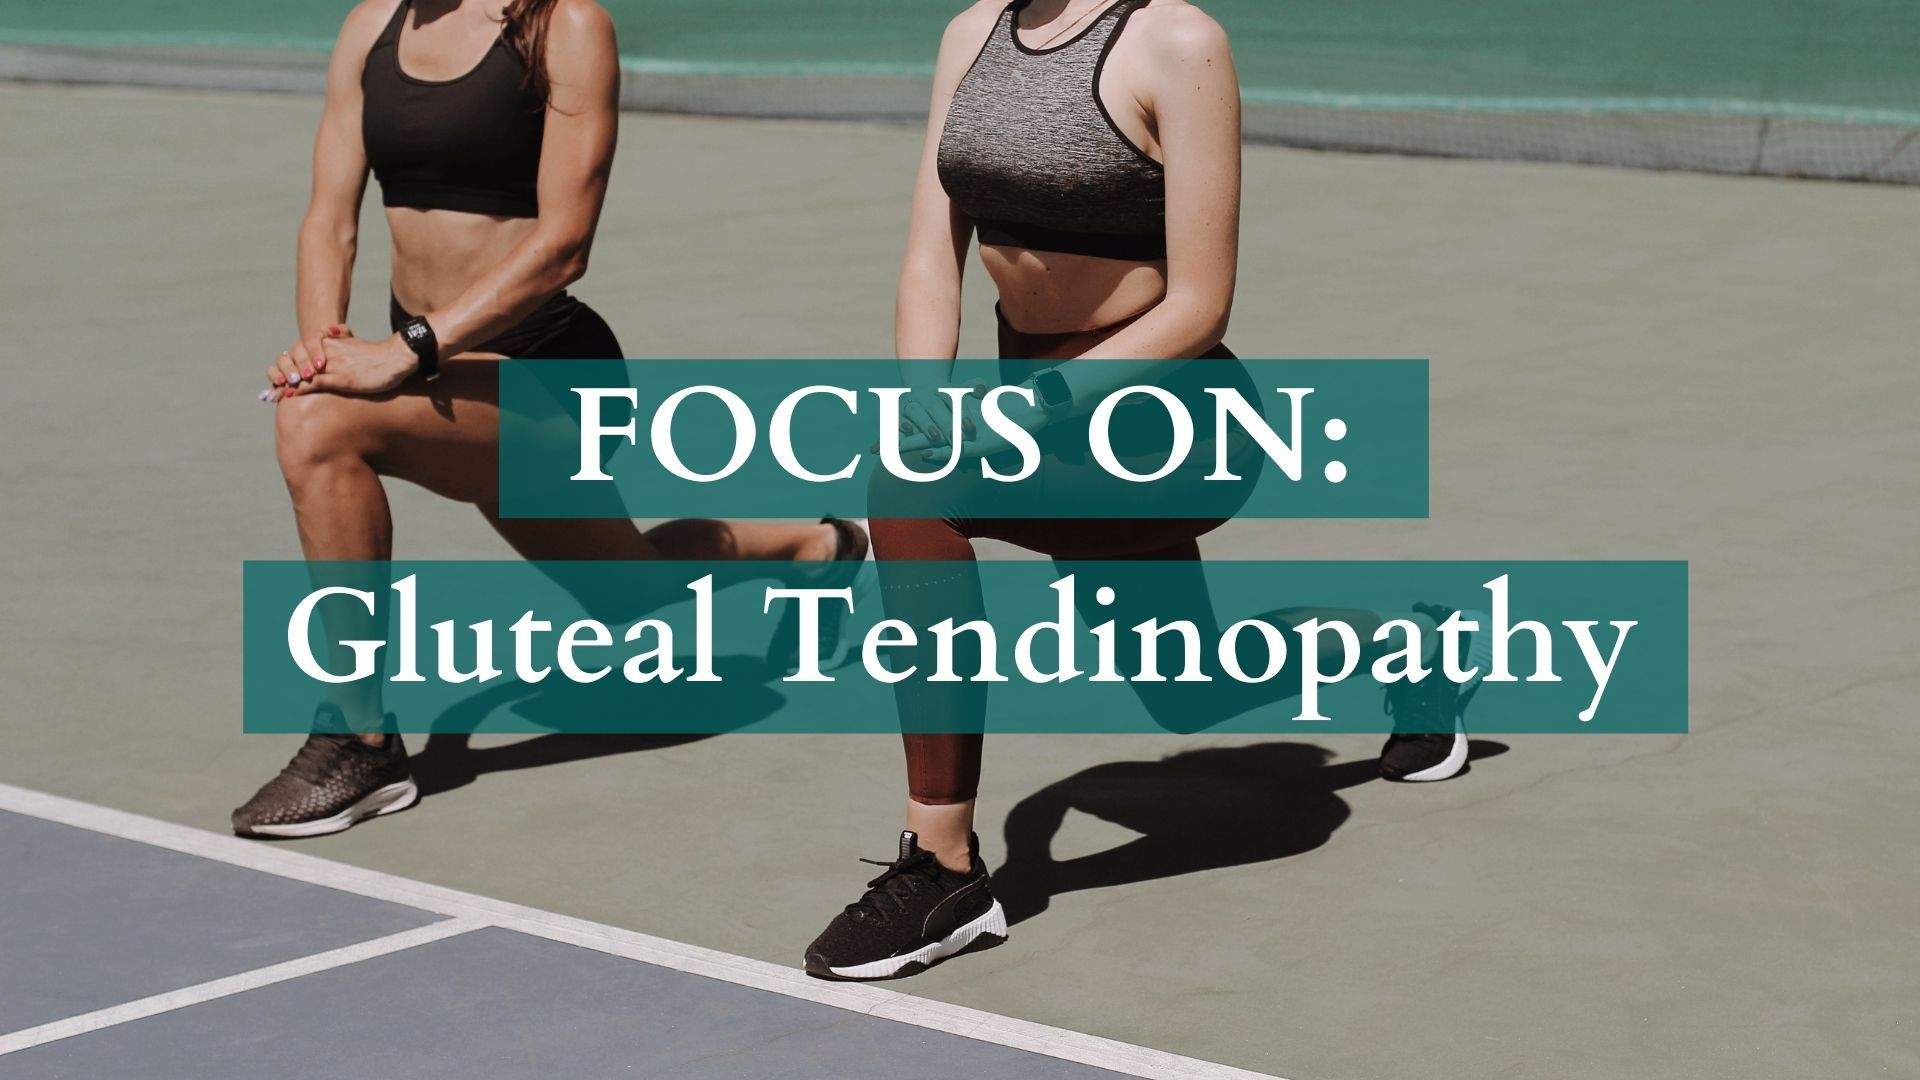 Focus On: Gluteal Tendinopathy